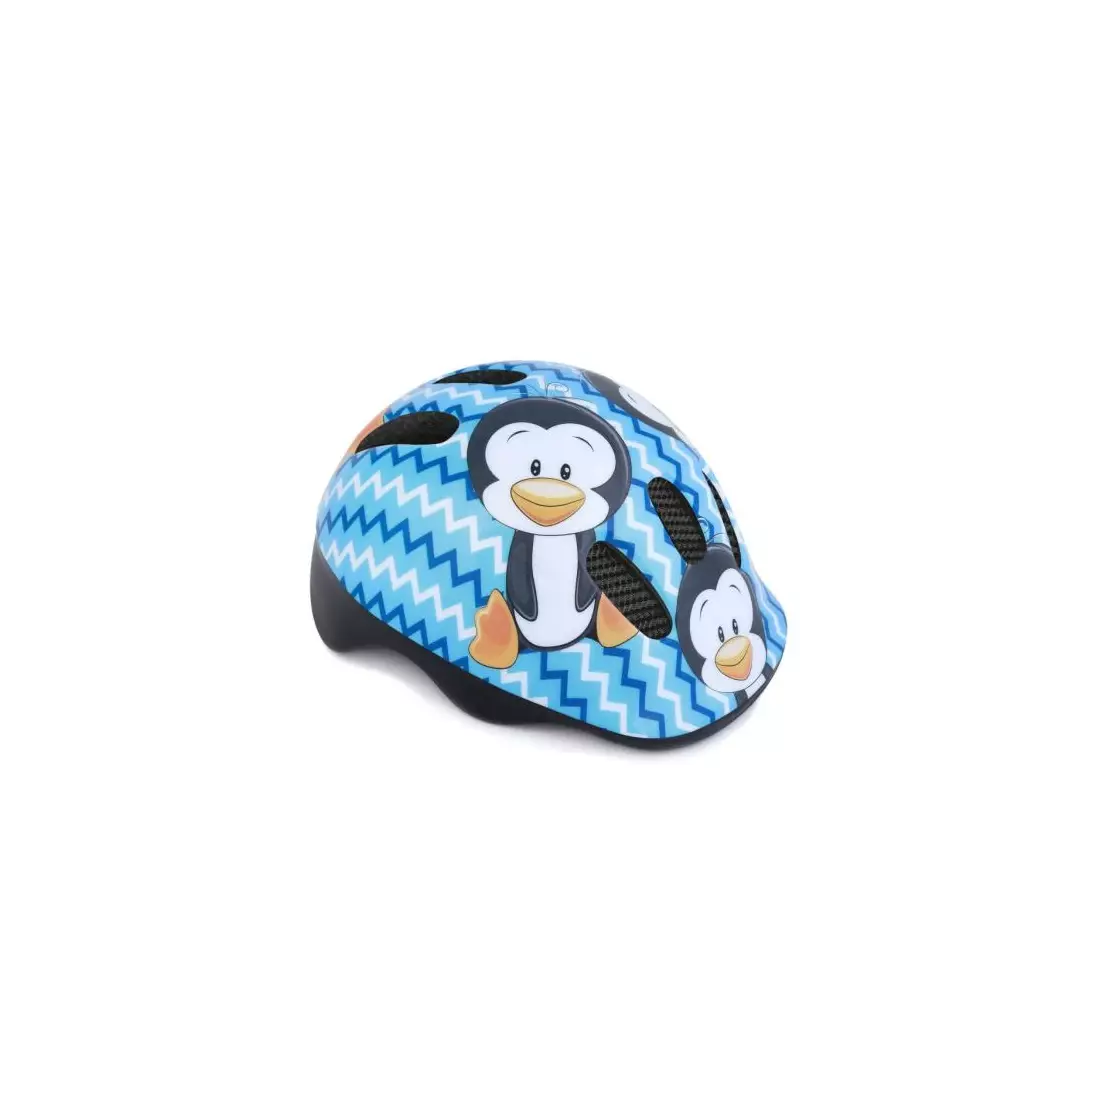 SPOKEY dětská cyklistická helma, penguin